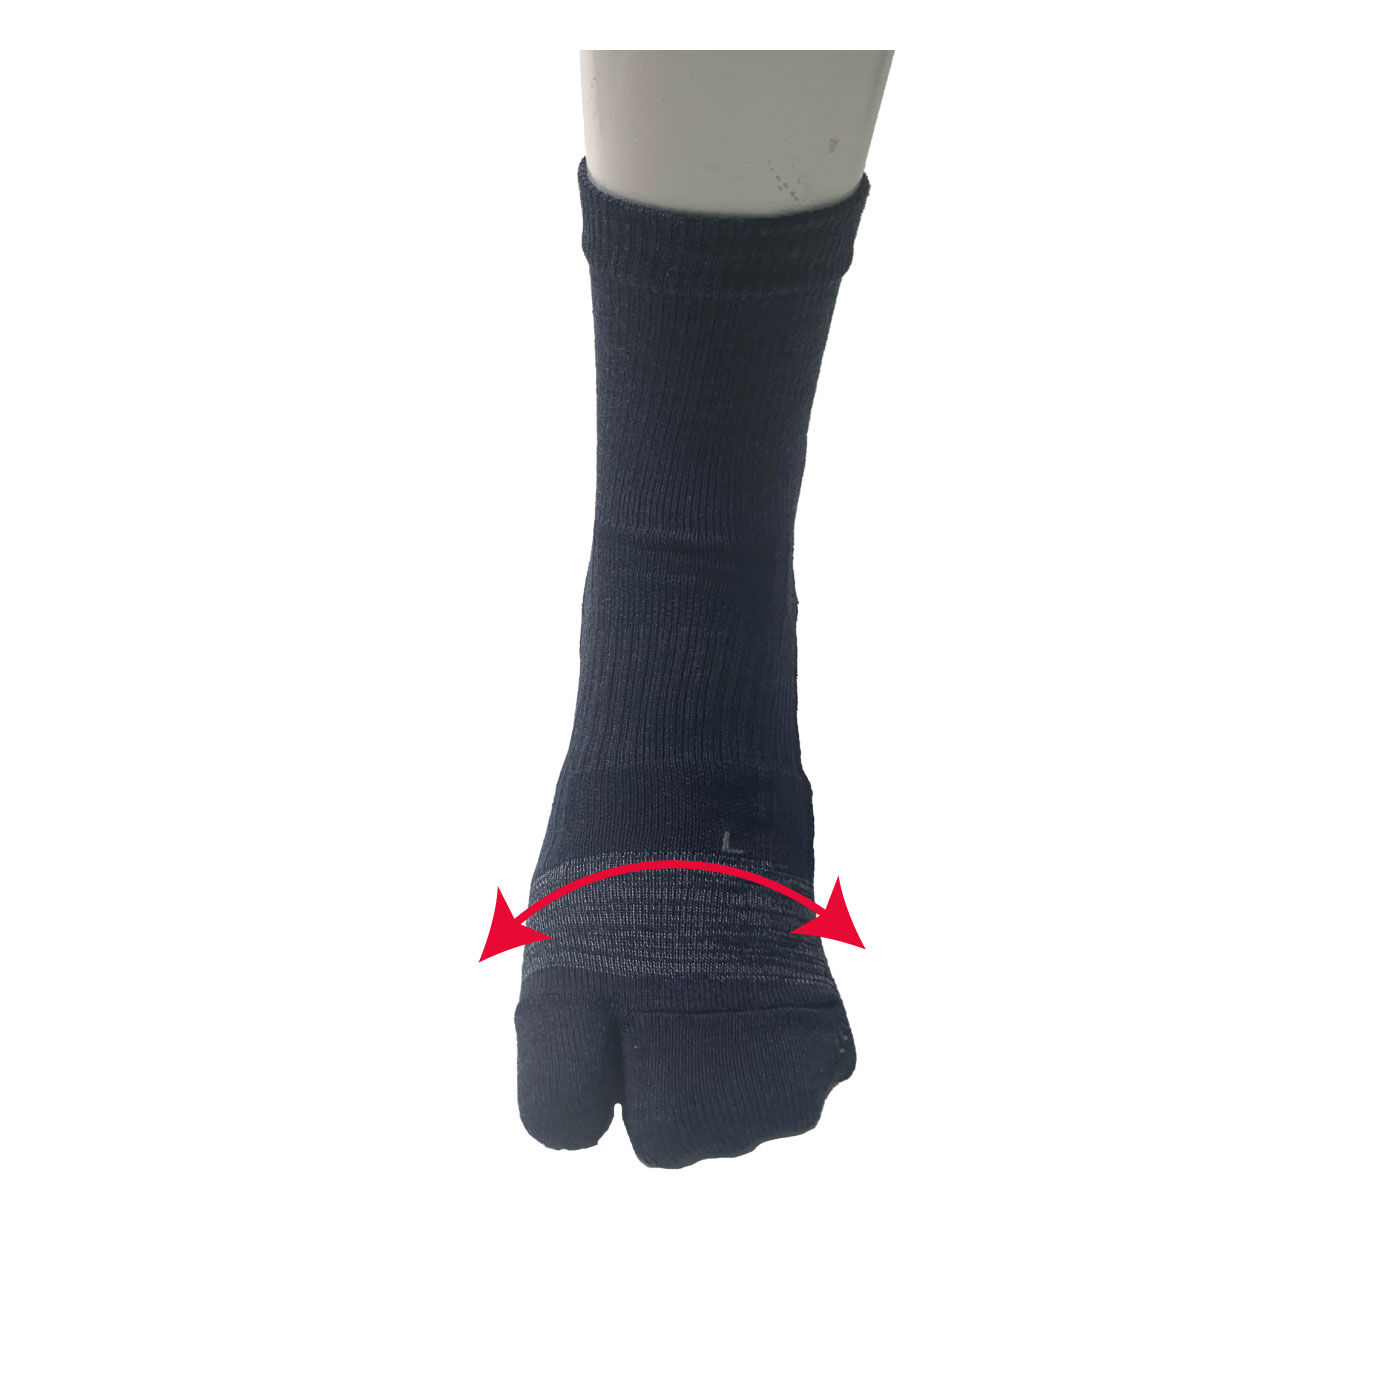 FELISSIMO PARTNERS|足のアーチを支える毎日のくつ下|足袋型の靴下です。